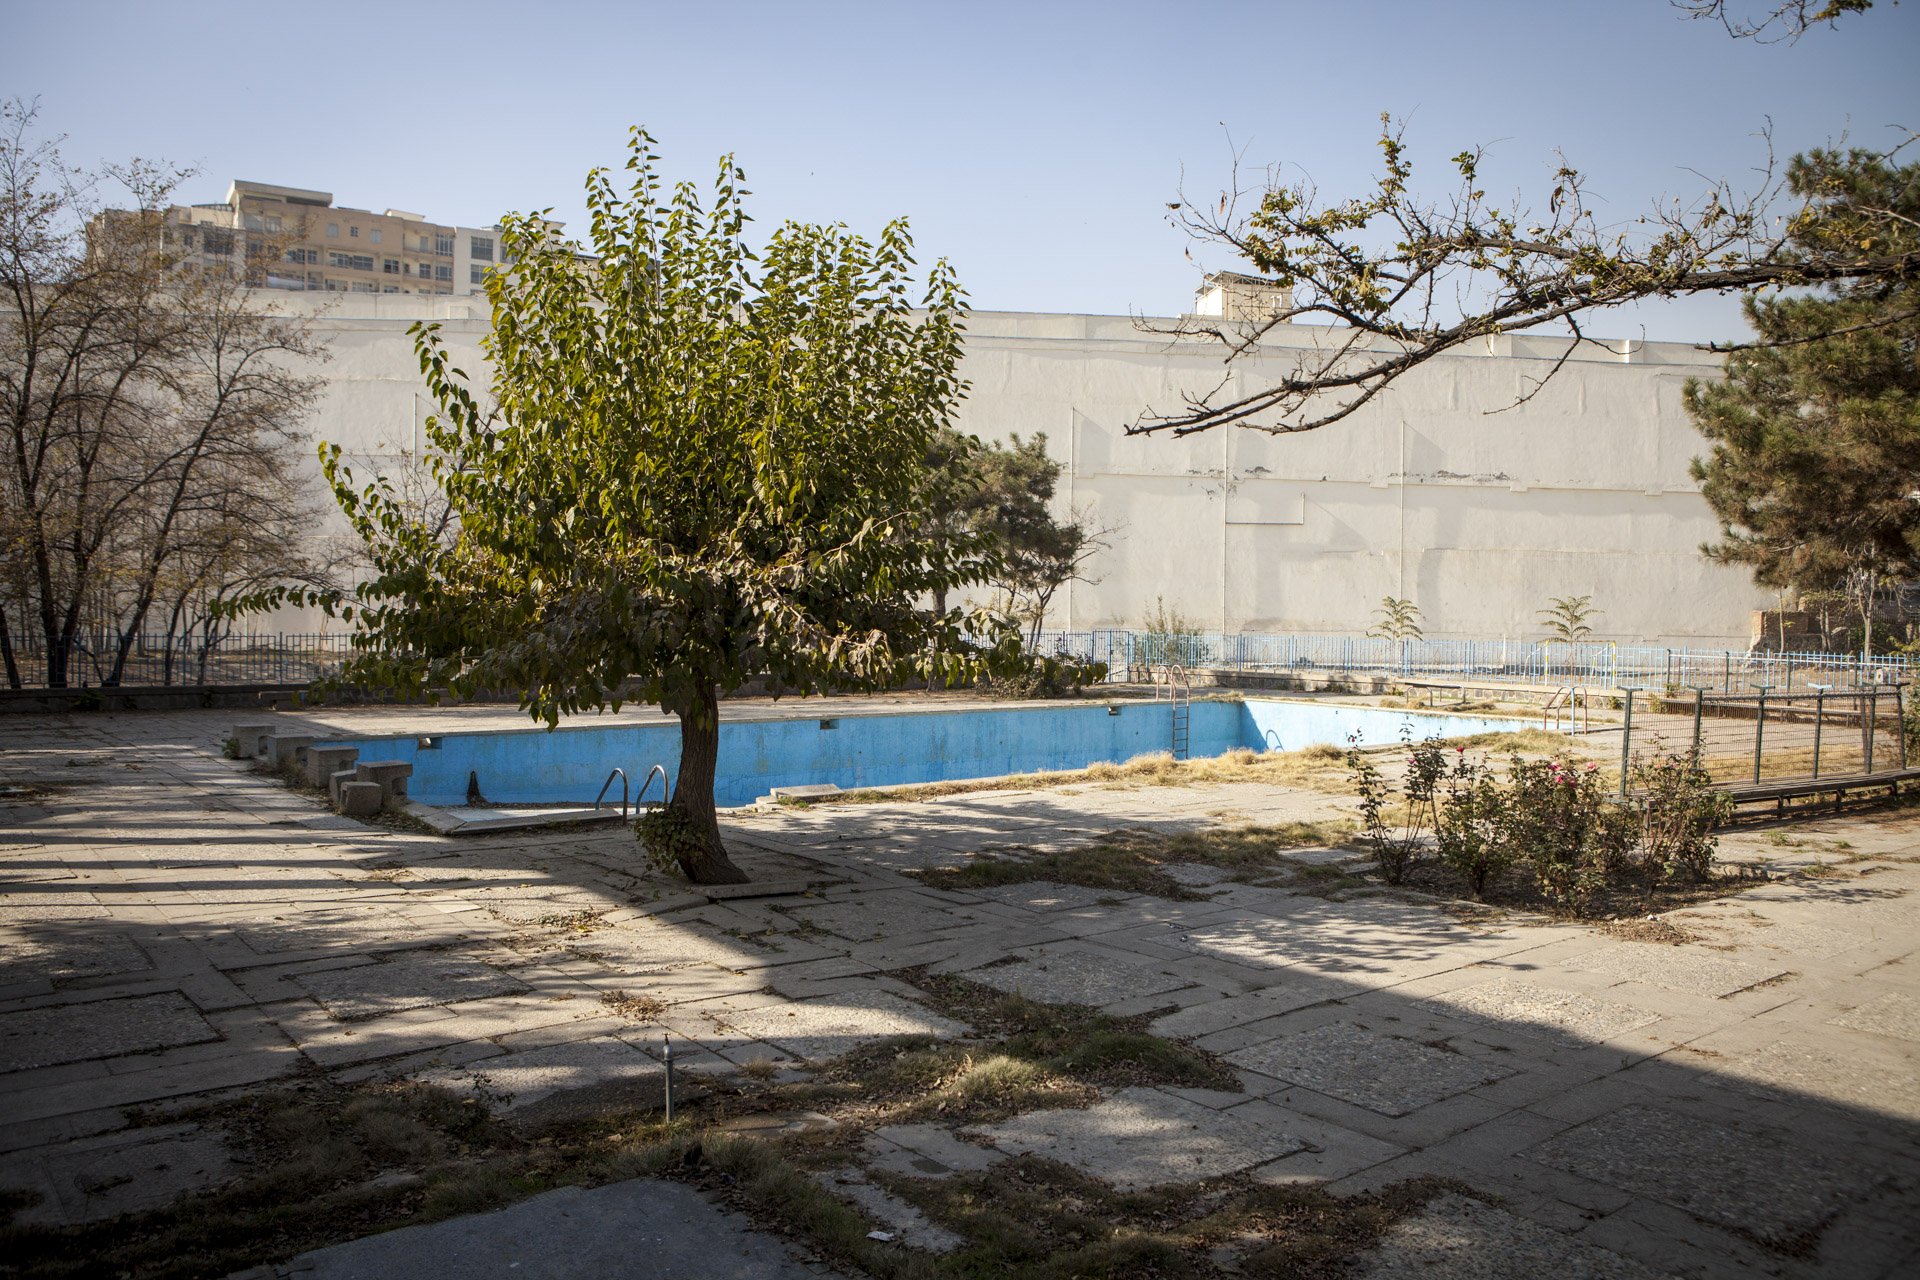  La piscine du lycée Français, inaugurée en 1974, détruite au milieu dans années 80 et désaffectée depuis, même si le lycée a rouvert ses portes en 2002, après la fin du régime taliban. Kaboul, Afghanistan 2014. 